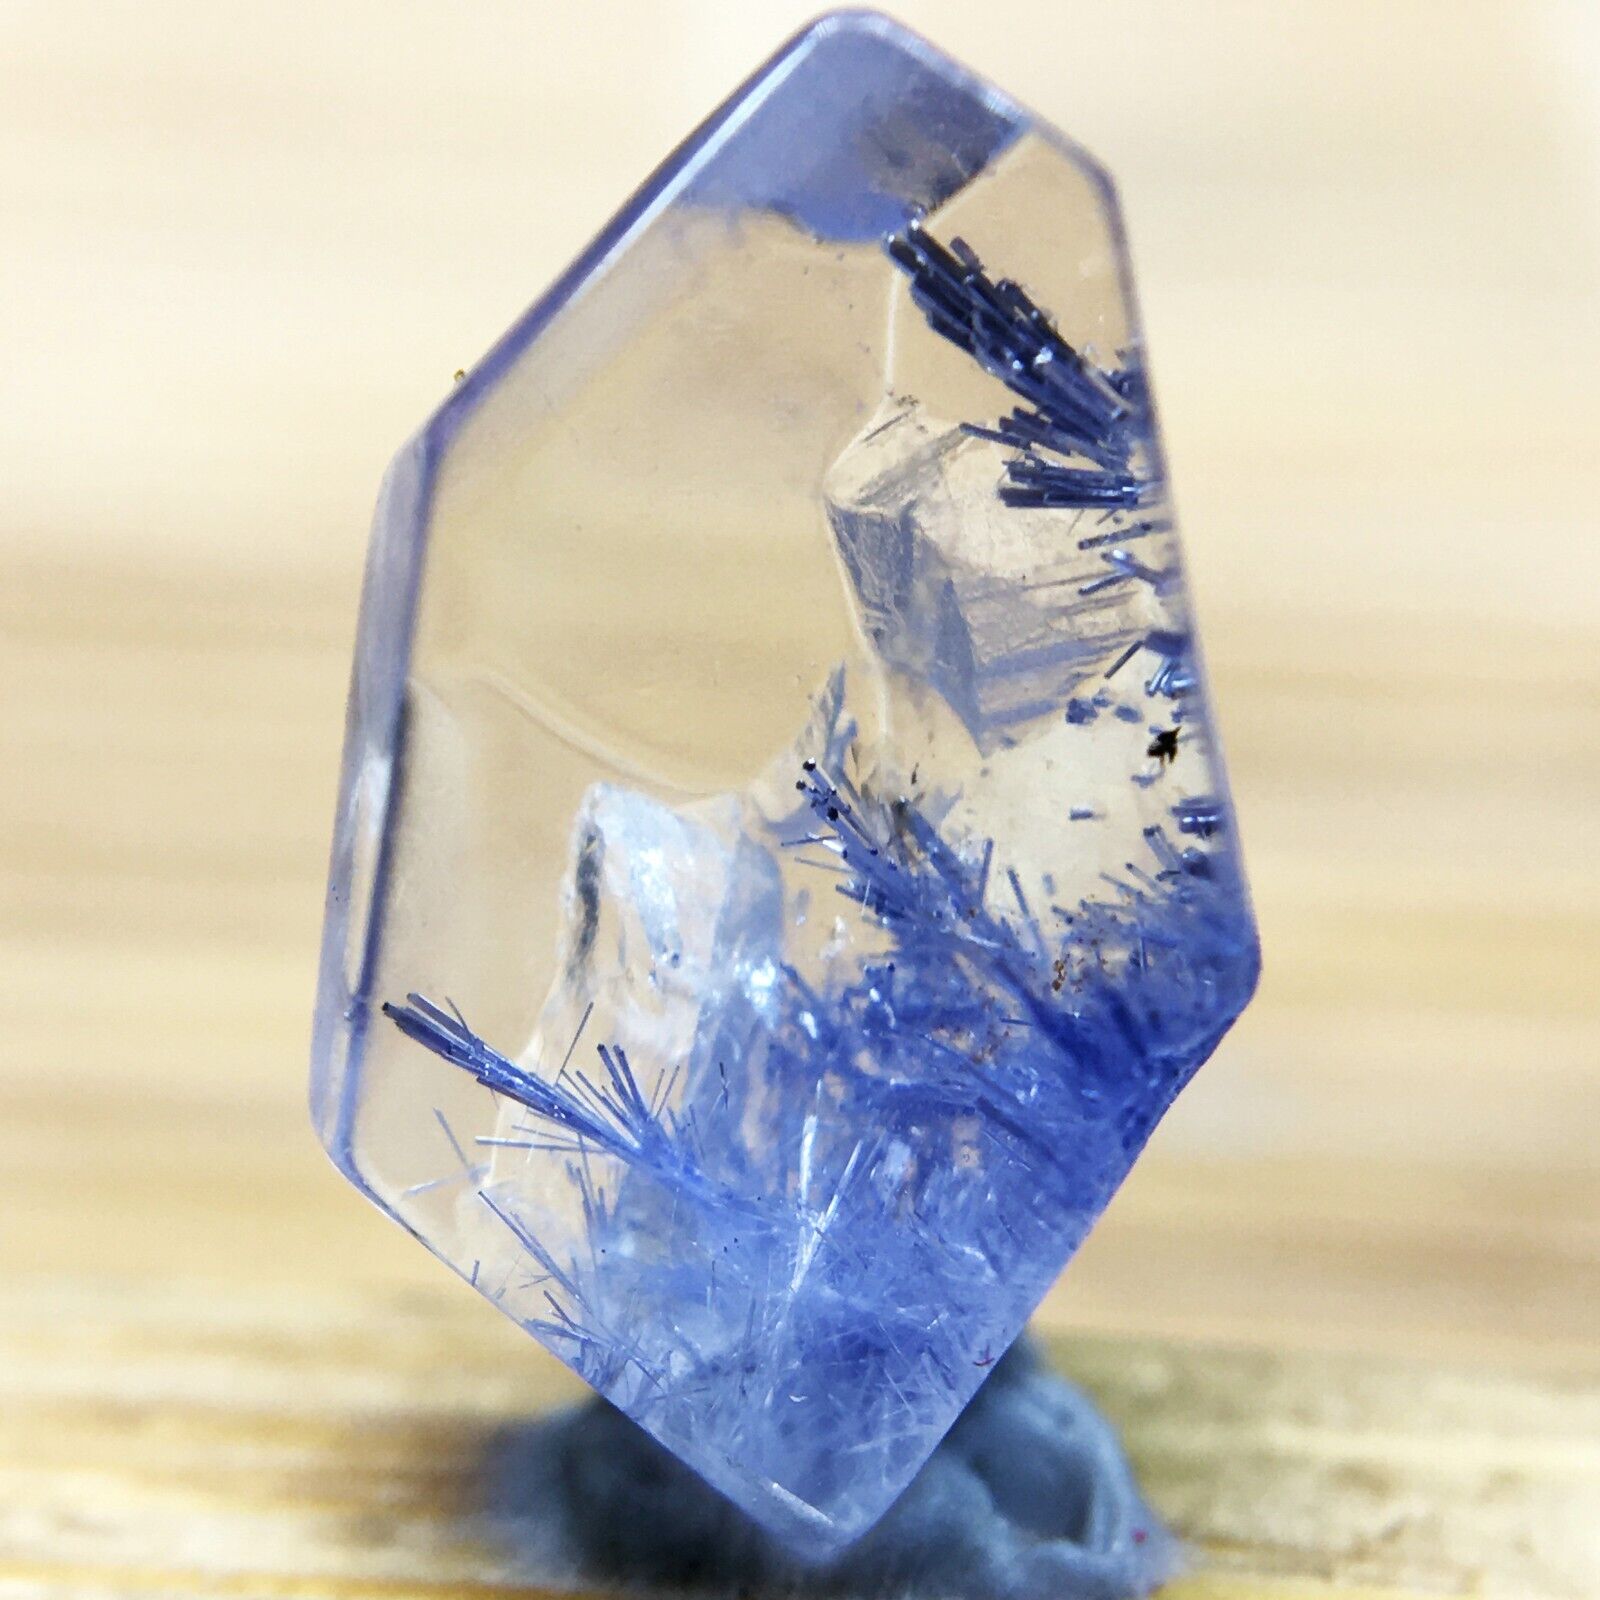 2Ct Very Rare NATURAL Beautiful Blue Dumortierite Quartz Crystal Specimen